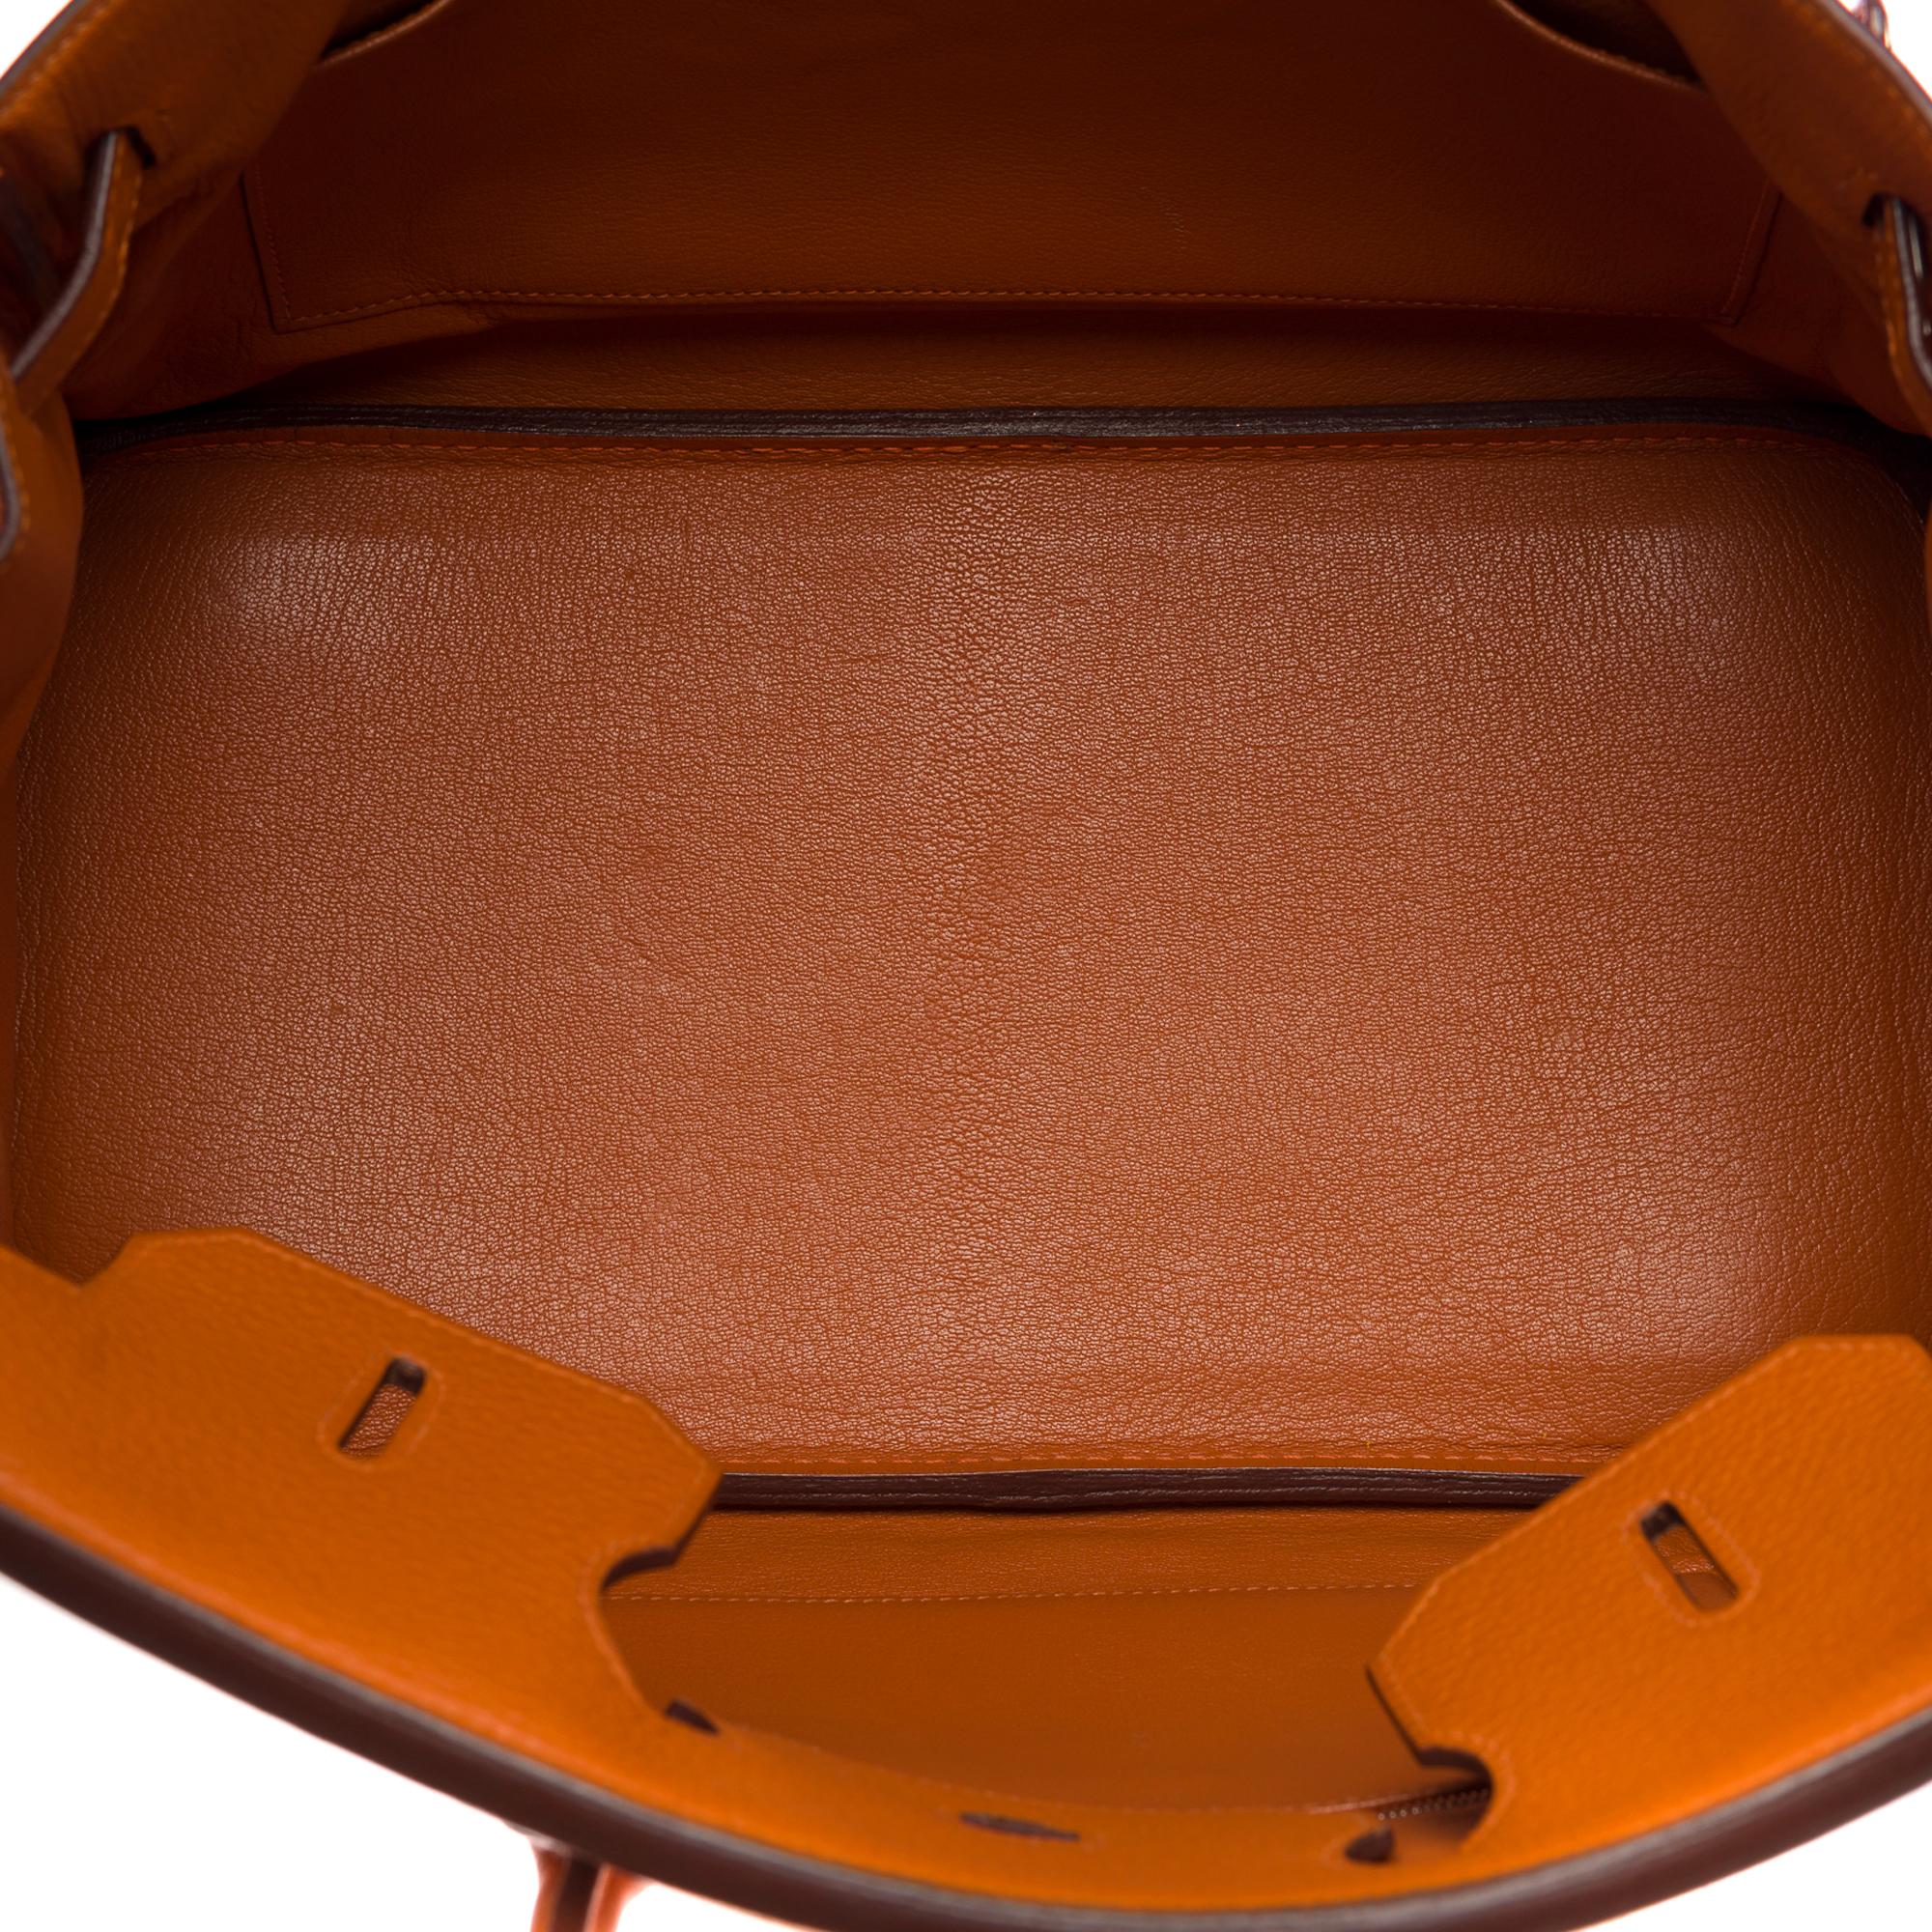 Stunning Hermès Birkin 35 handbag in Orange Togo leather, SHW 2